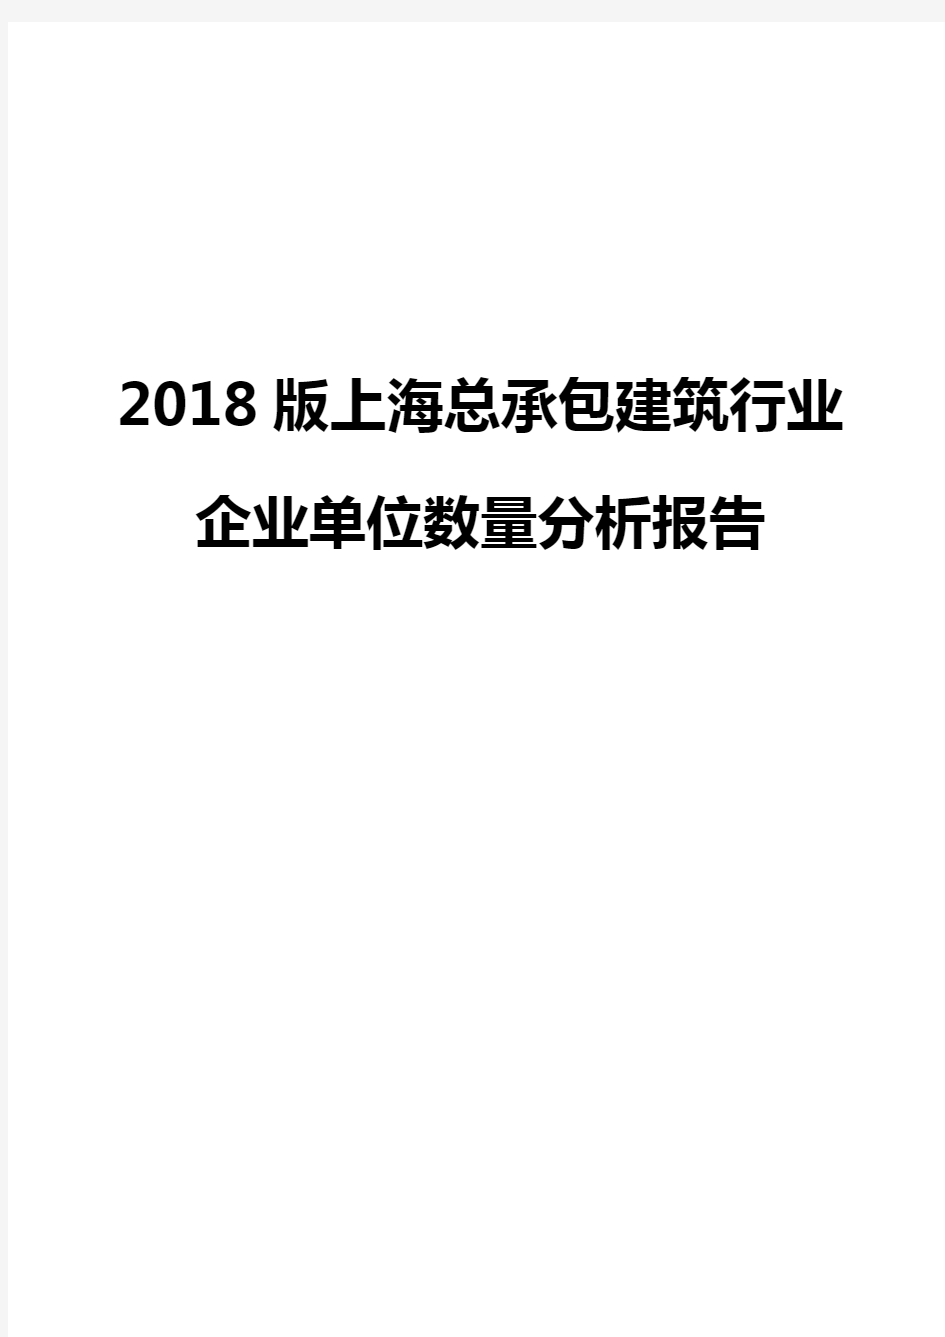 2018版上海总承包建筑行业企业单位数量分析报告